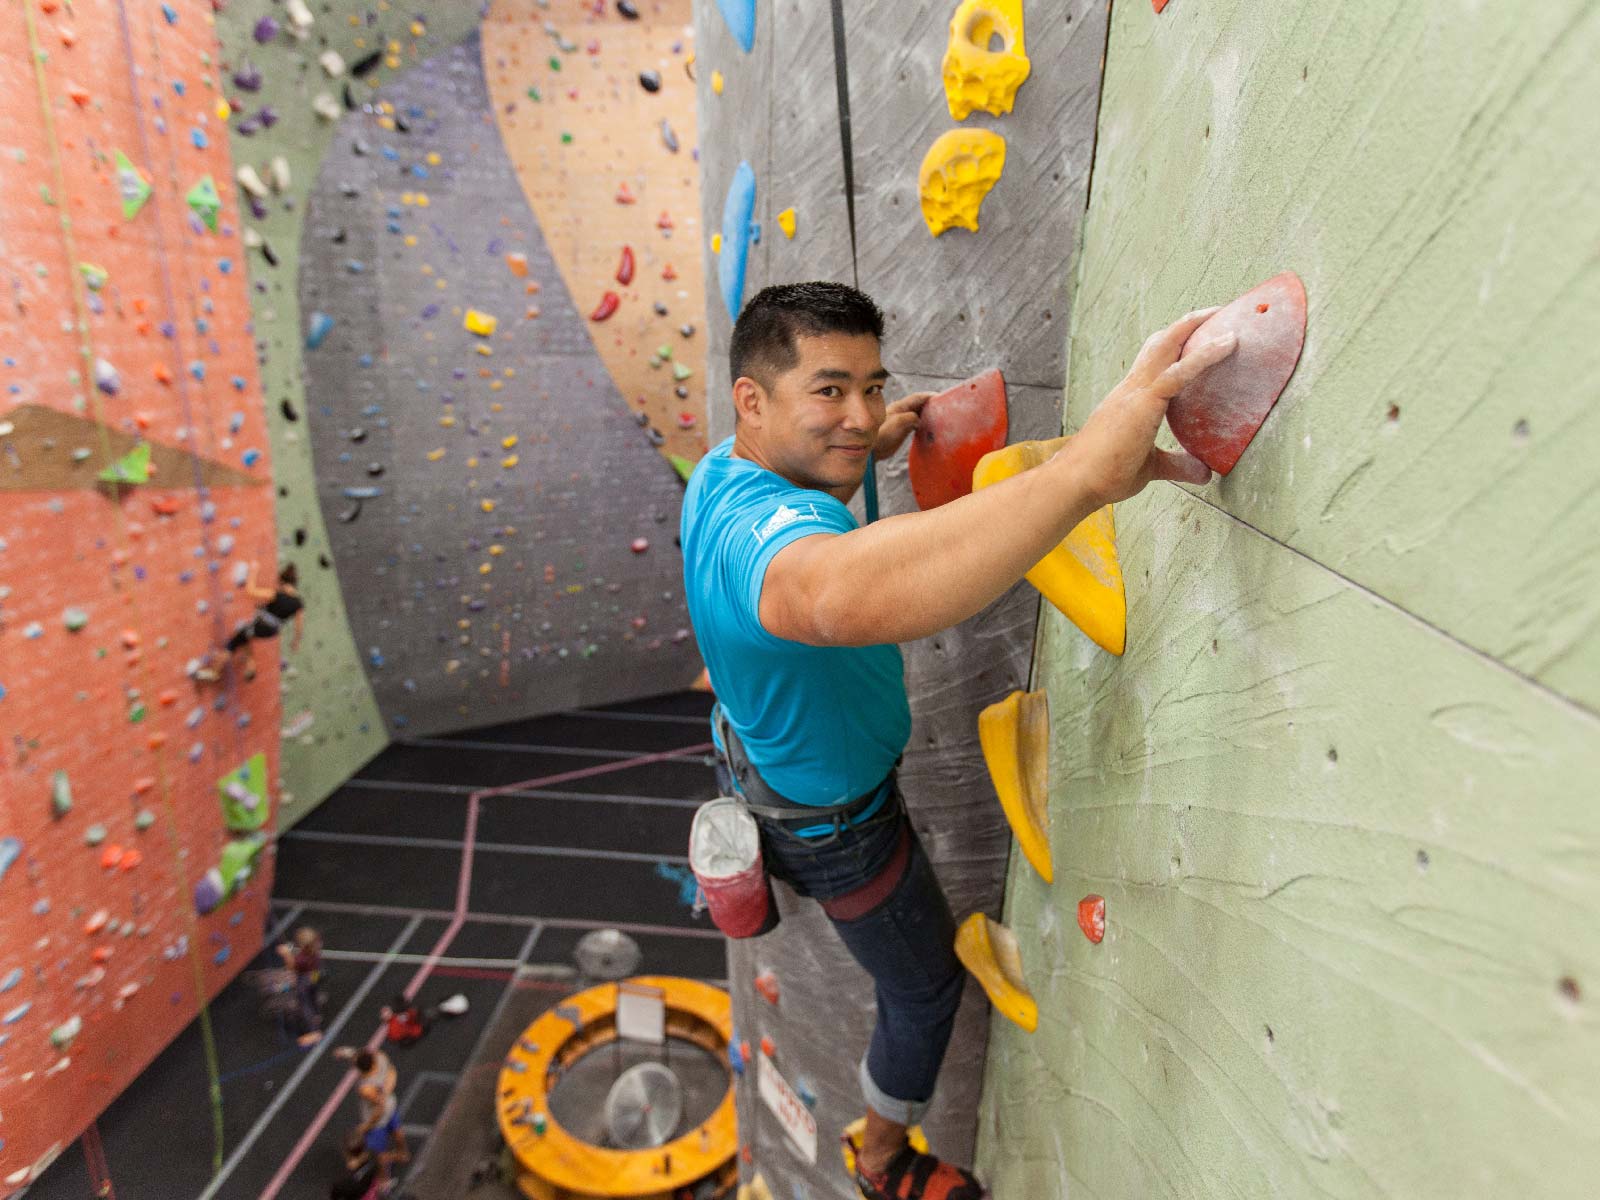 Eddie Espinosa climbing up an indoor wall